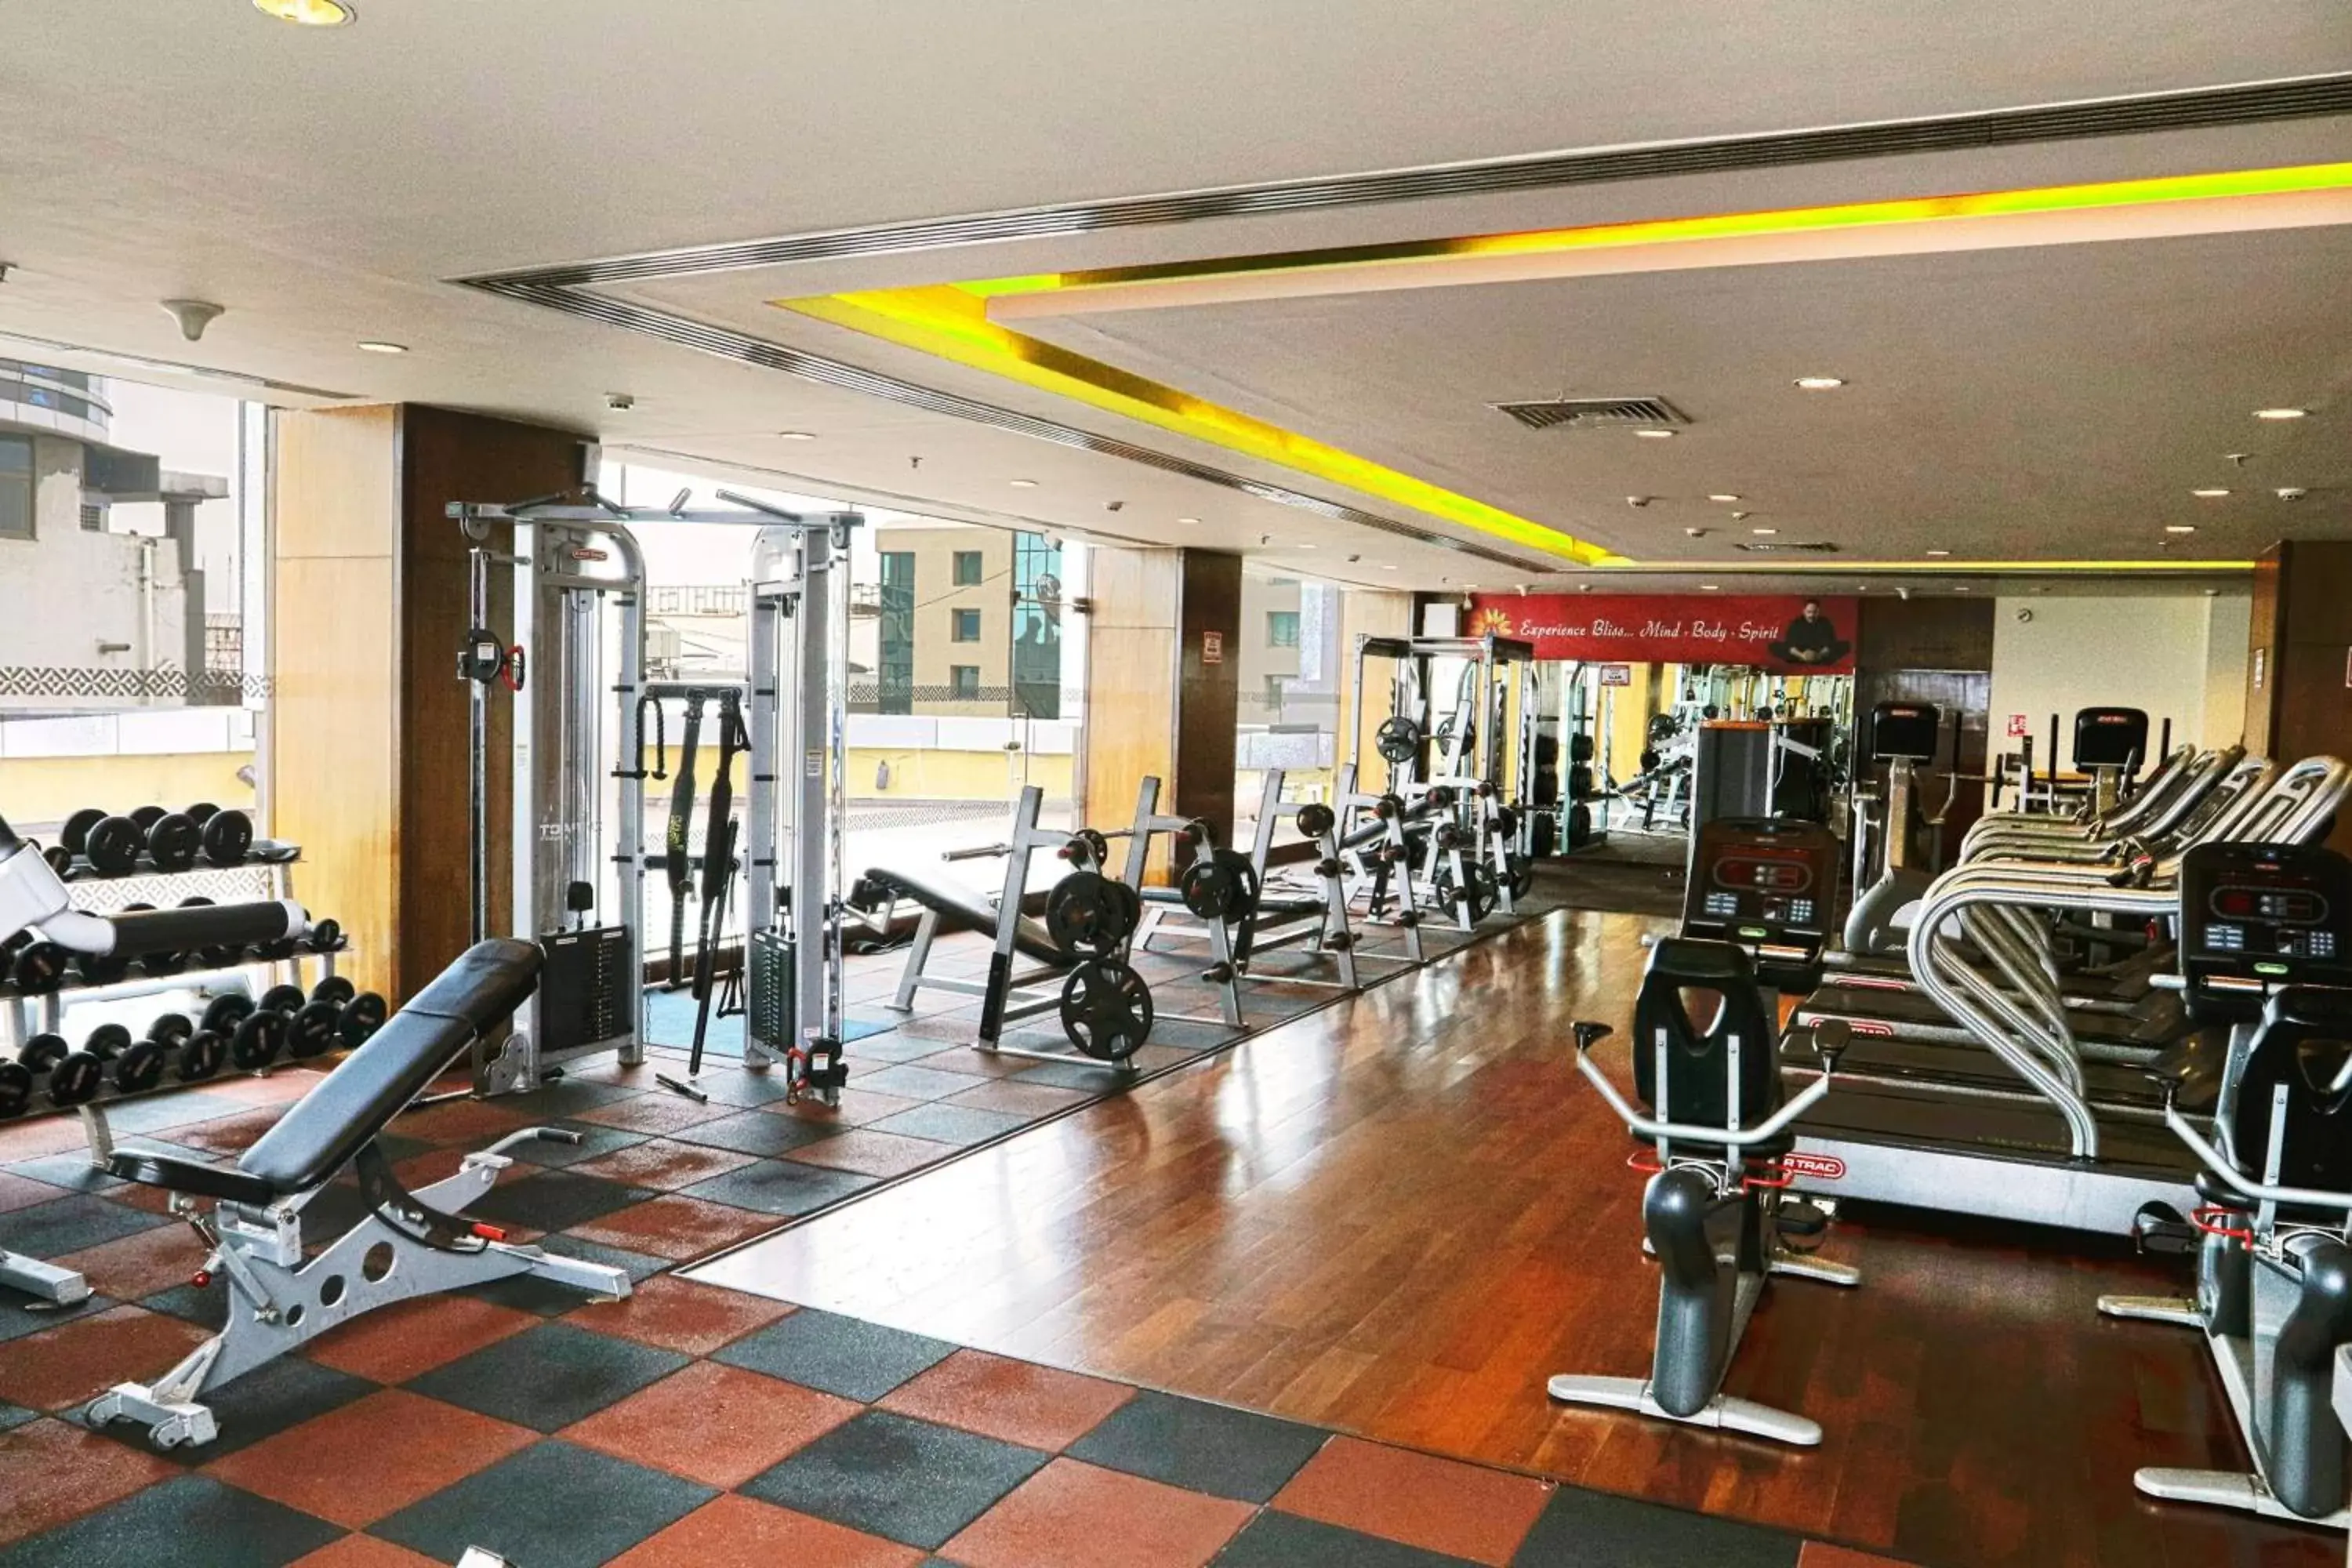 Fitness centre/facilities, Fitness Center/Facilities in Four Points by Sheraton Navi Mumbai, Vashi